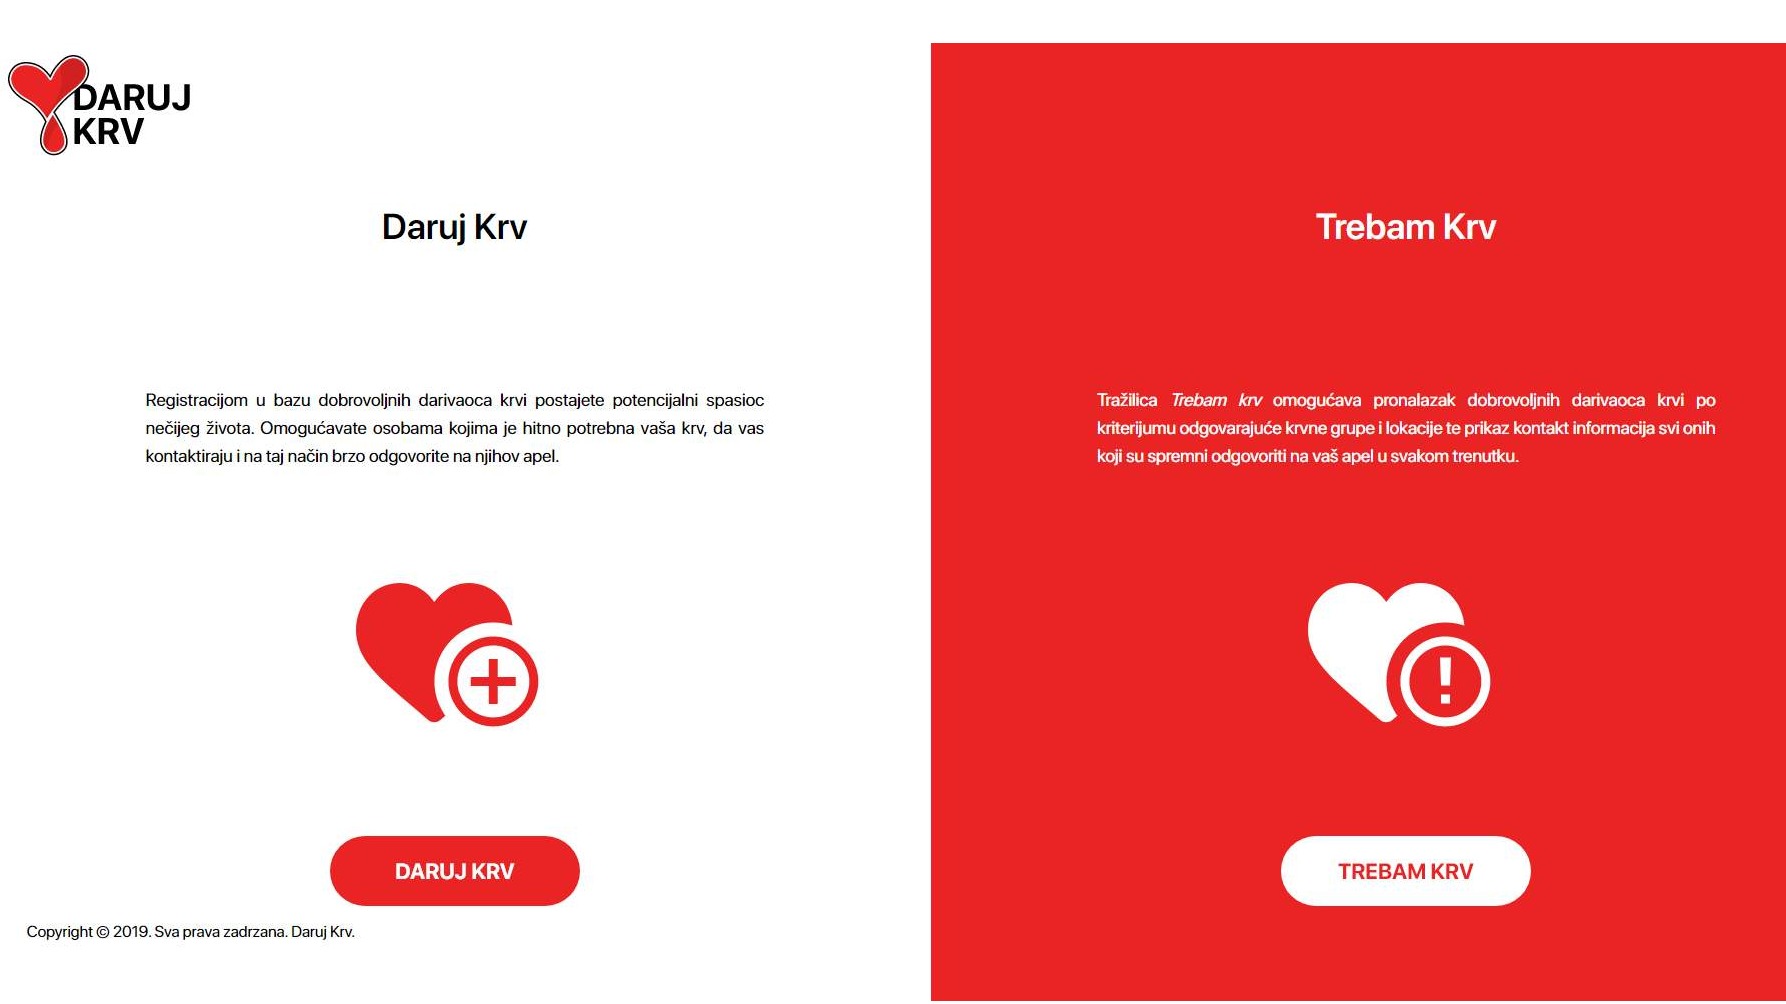 Web aplikacija koja spašava živote: Daruj krv/Trebam krv